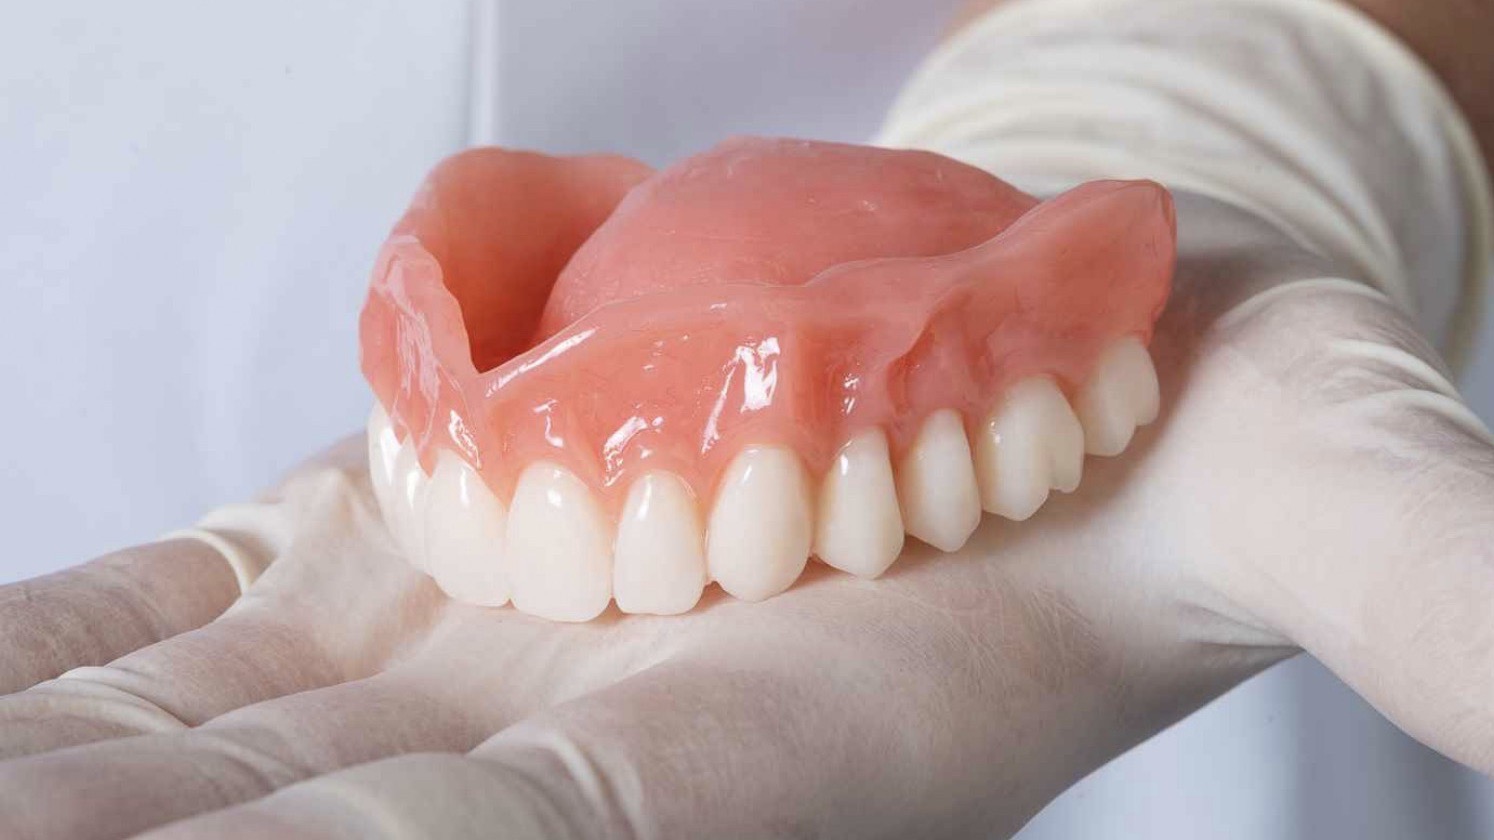 How long do immediate dentures last?